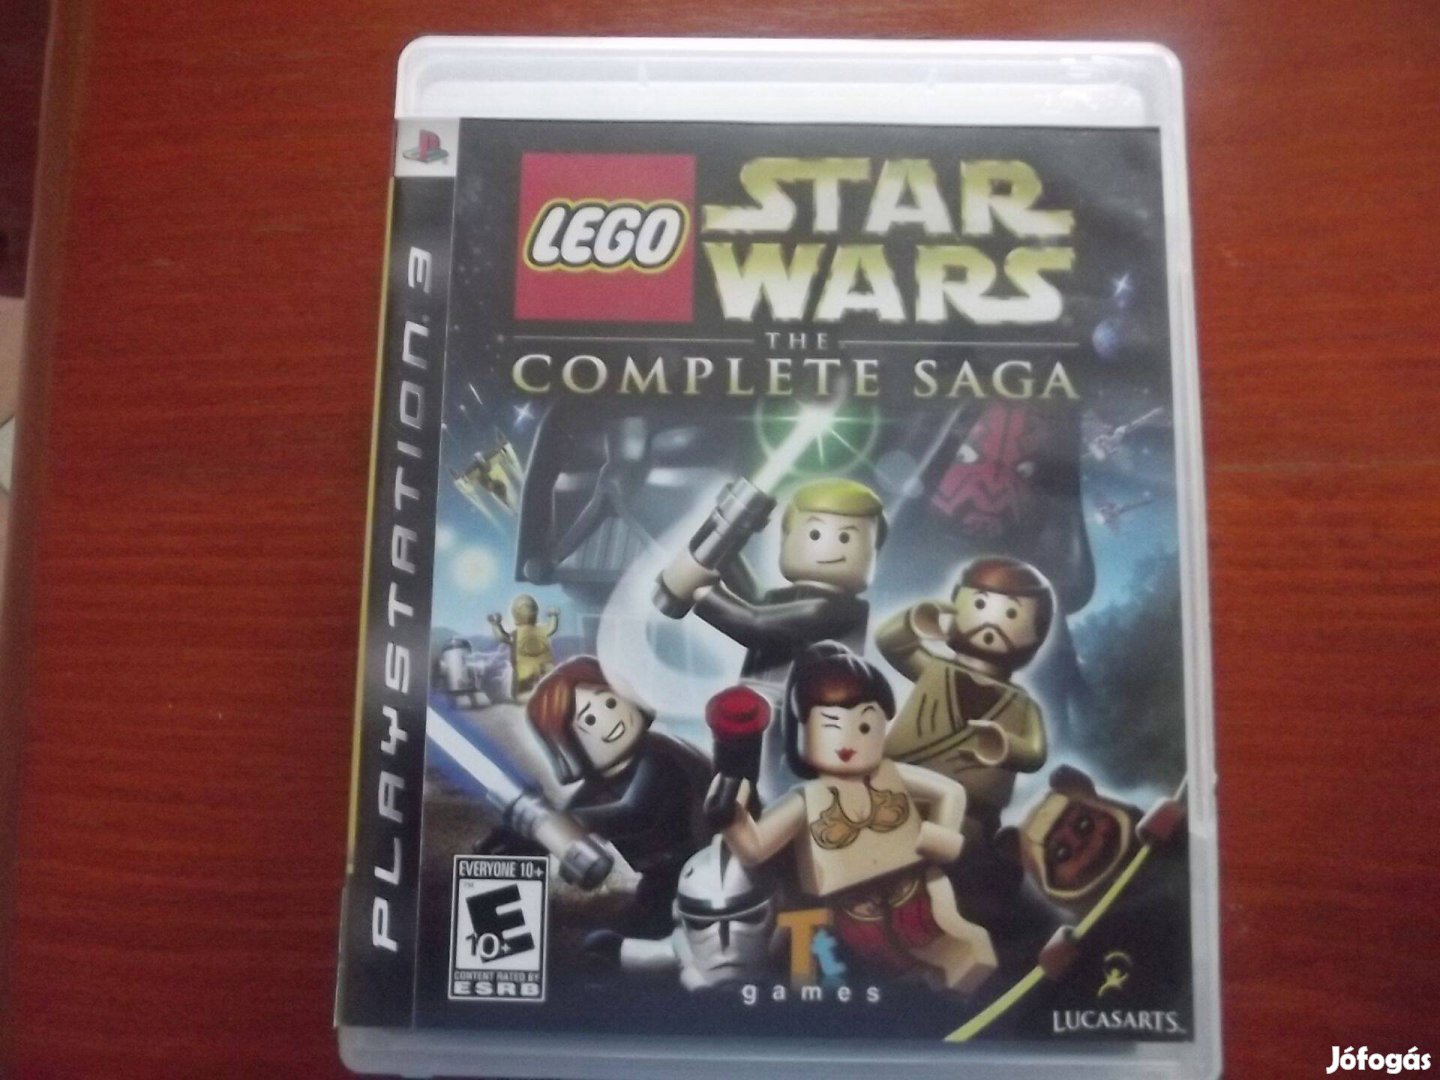 Ps3-74 Ps3 Eredeti Játék : Lego Star Wars The Complette Saga ( karcme